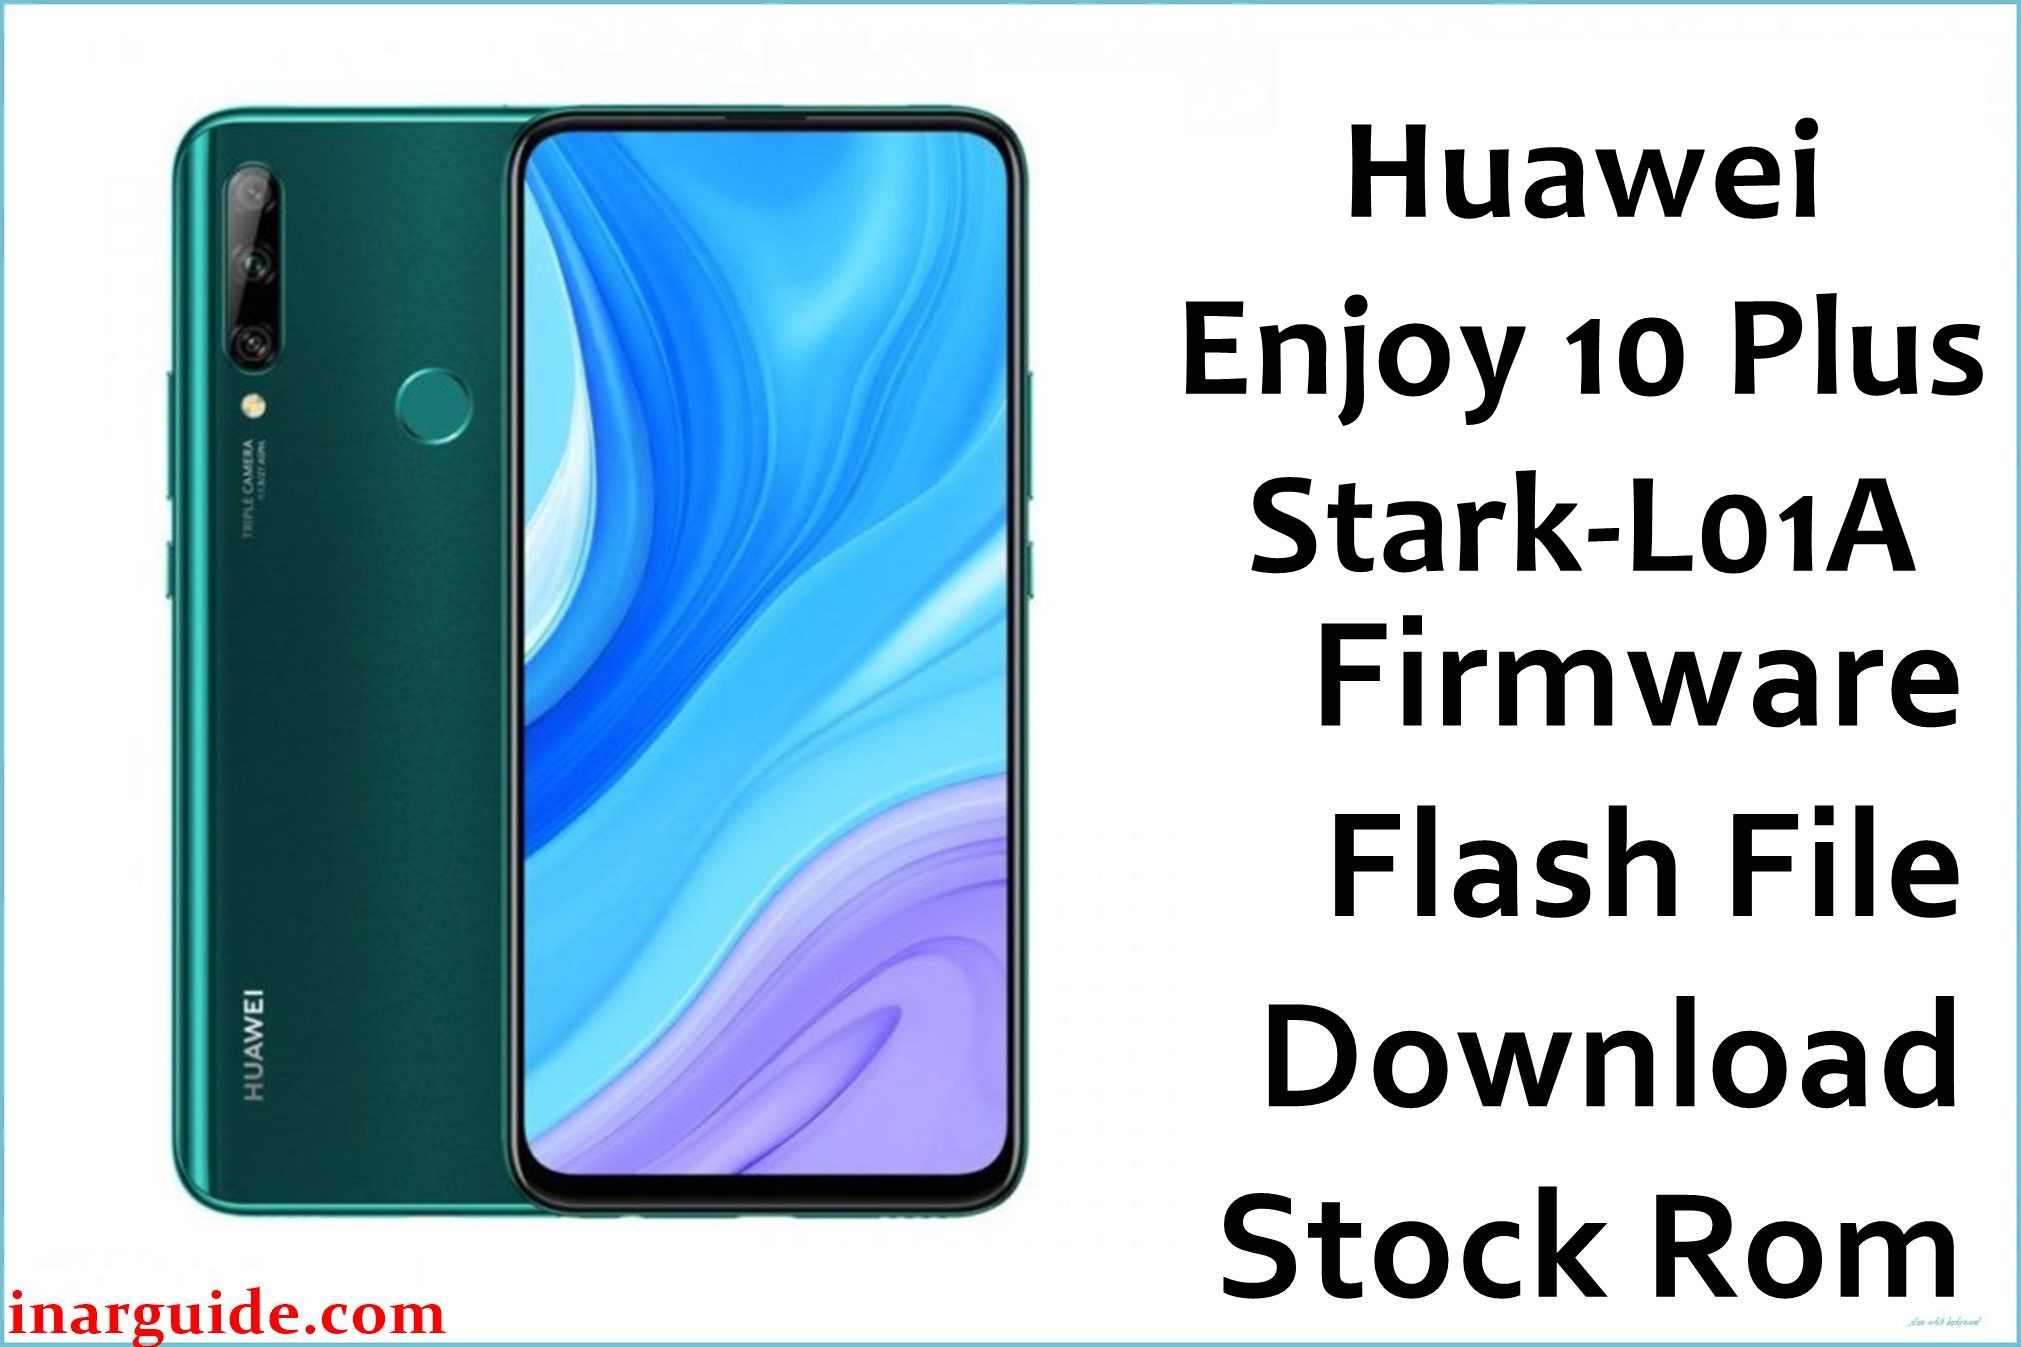 Huawei Enjoy 10 Plus Stark L01A